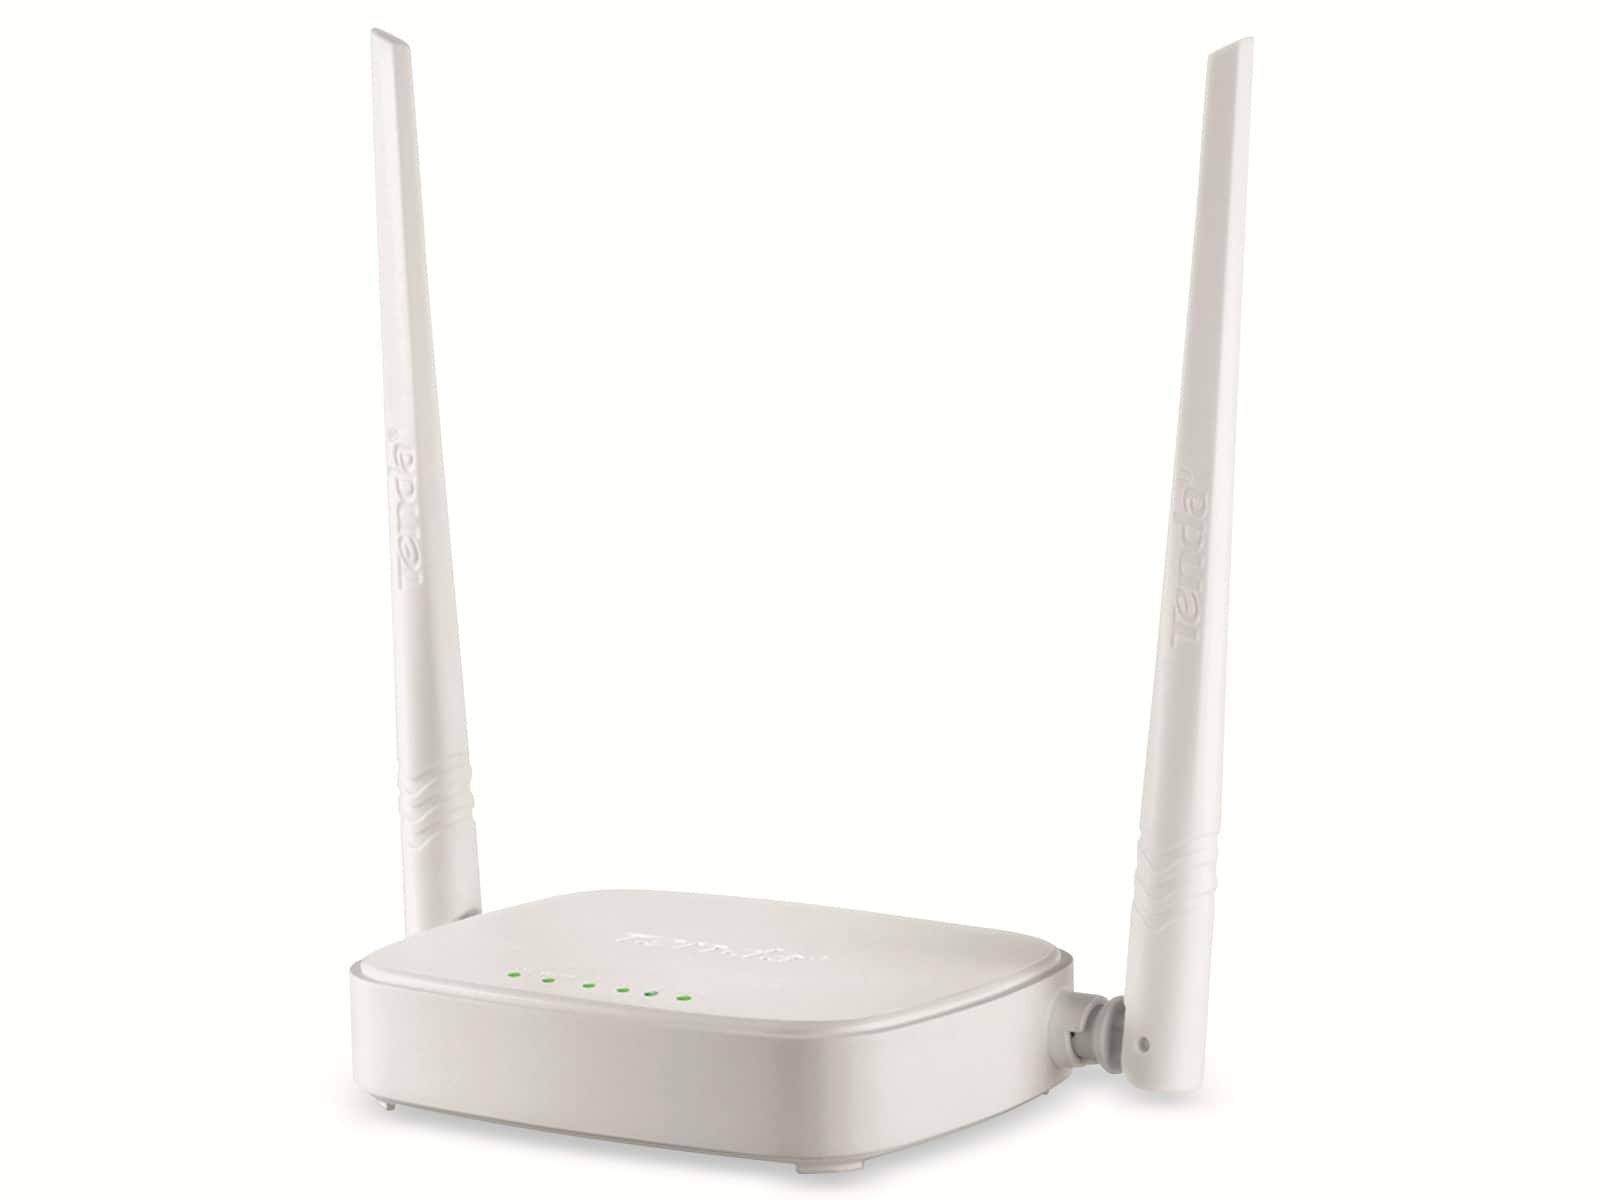 WLAN-Router TENDA N301, 3x LAN-Ports, 300 MBit/s